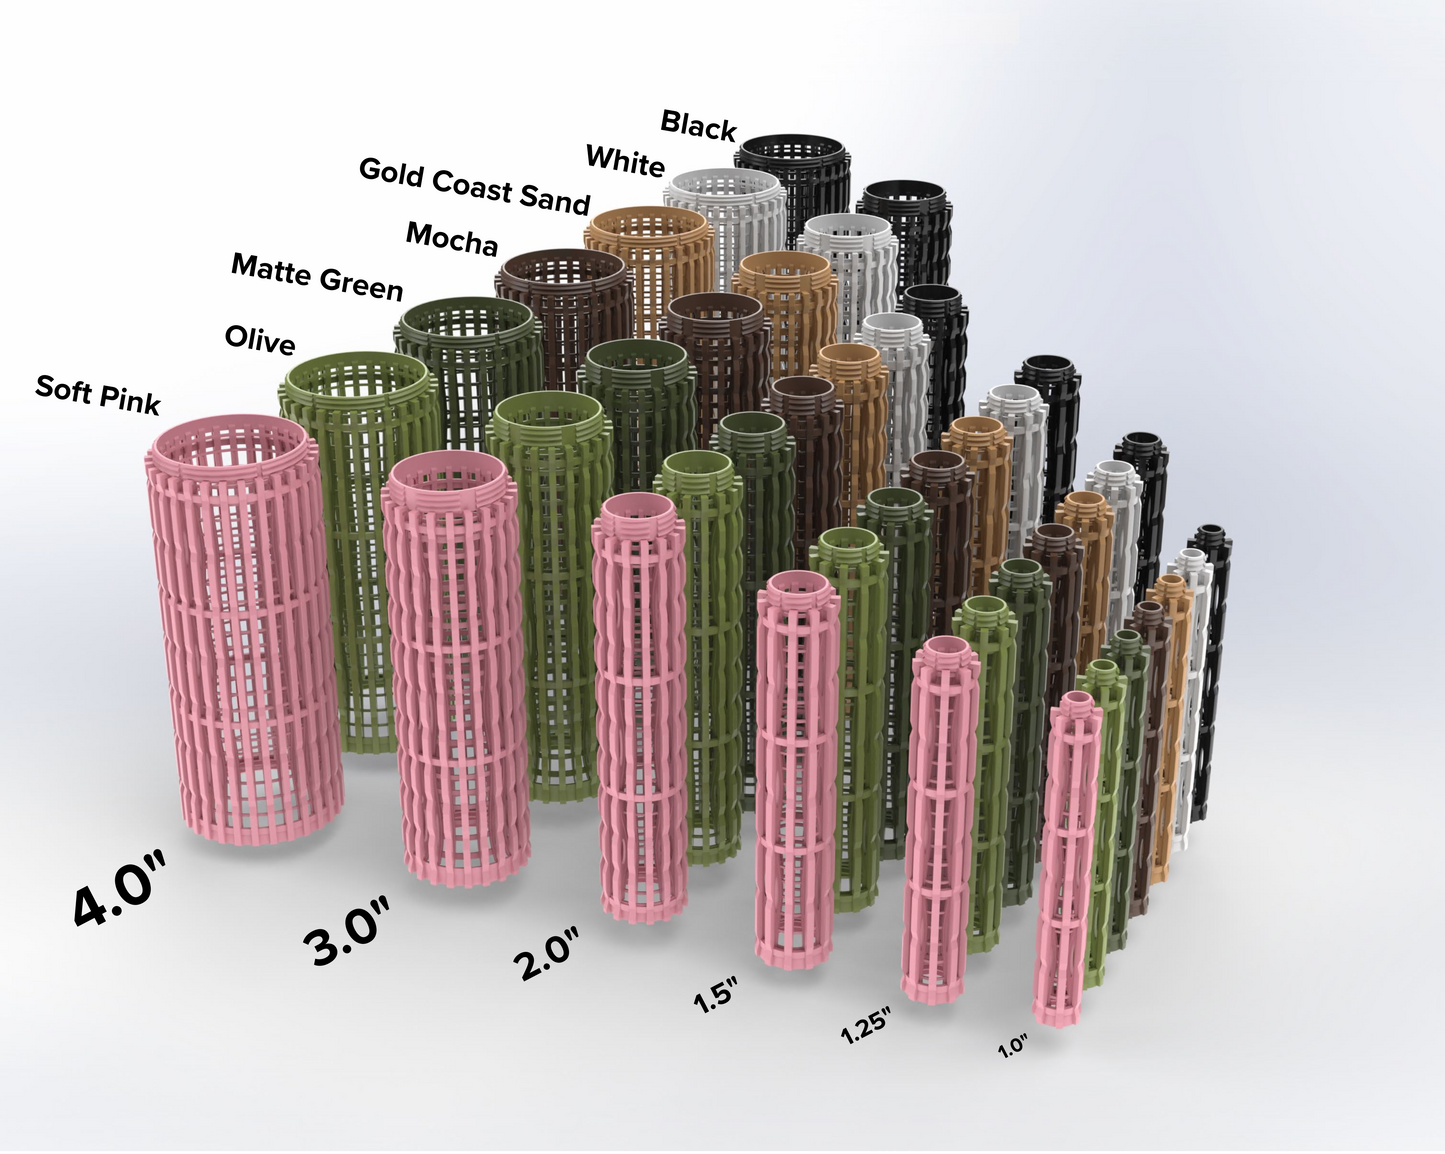 1.25″Φ/Small Pro Series Designer Modular Moss Poles for Plants